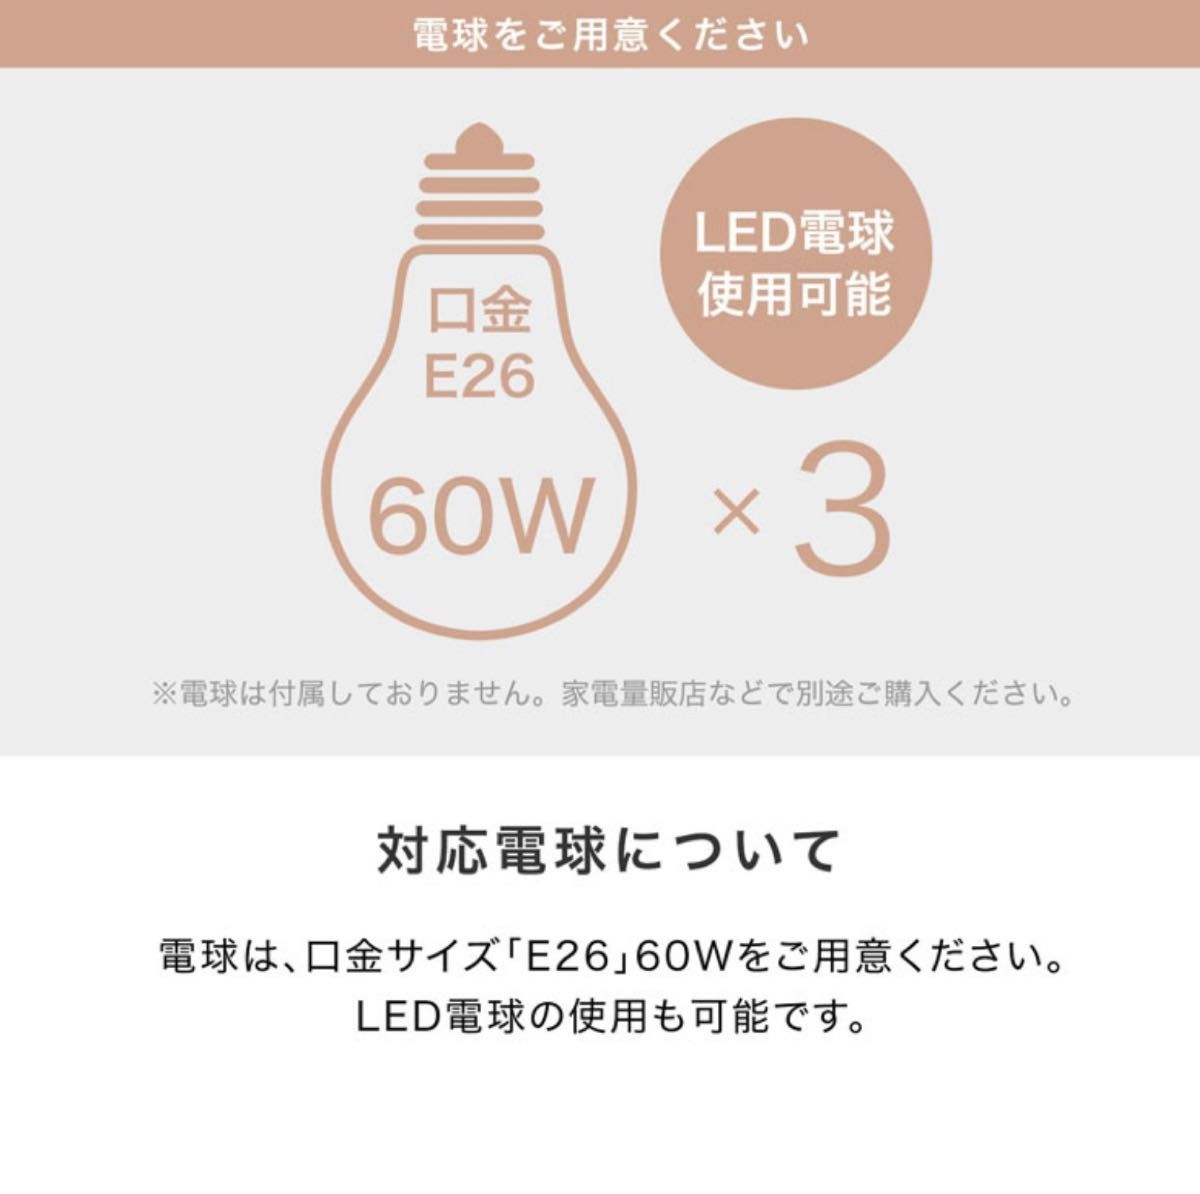 【新品未使用】LOWYA LED シーリングライト  天井照明 ゴールド 大理石調 韓国風  ペンダントライト